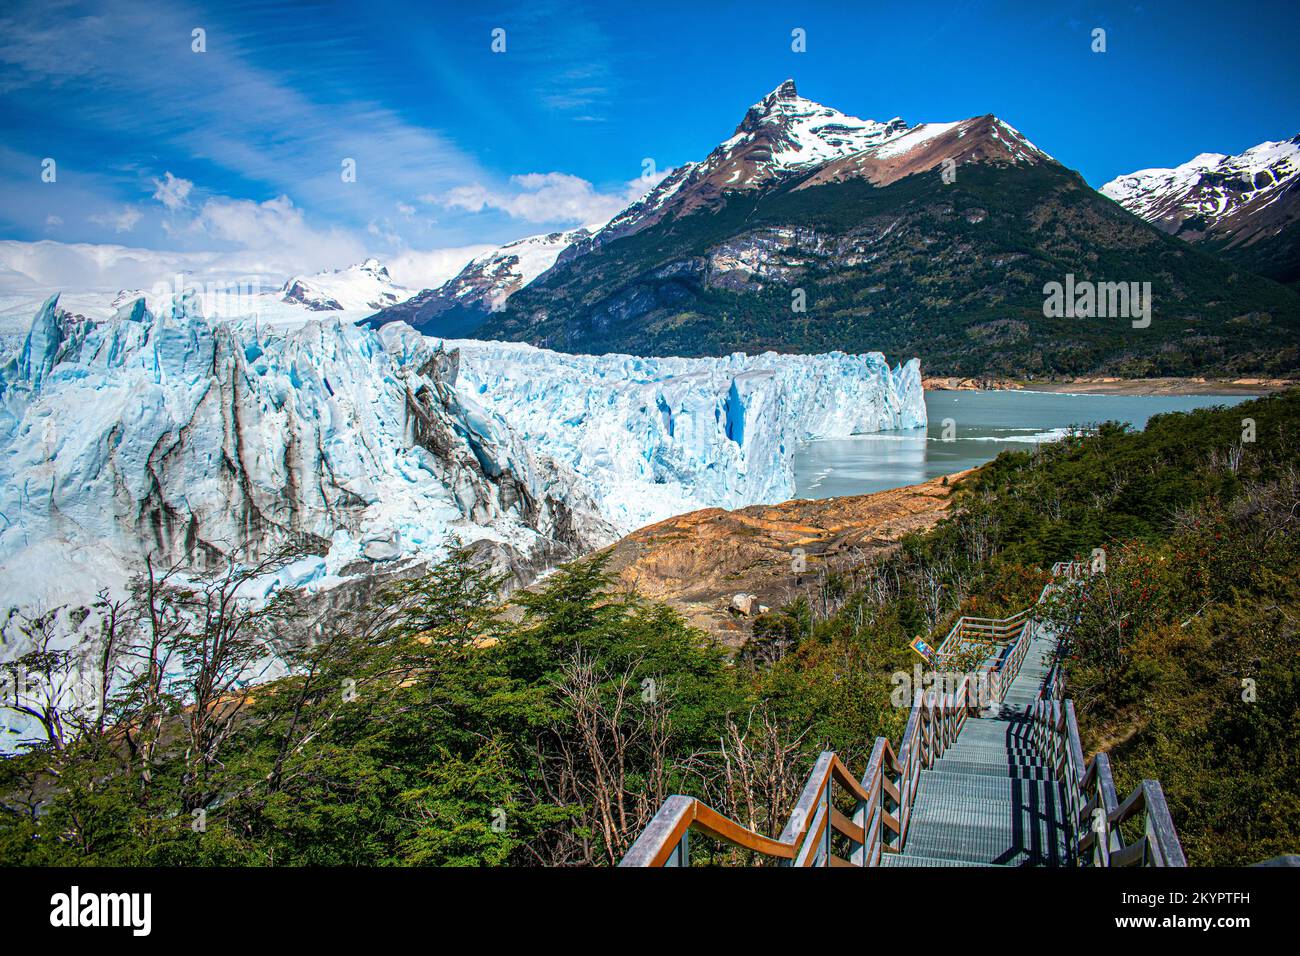 Patagonia argentina: Ghiacciaio Perito Moreno e montagne innevate (Los Andes). Lago Argentino, Parco Nazionale Los Glaciares, Santa Cruz, Argentina. Foto Stock